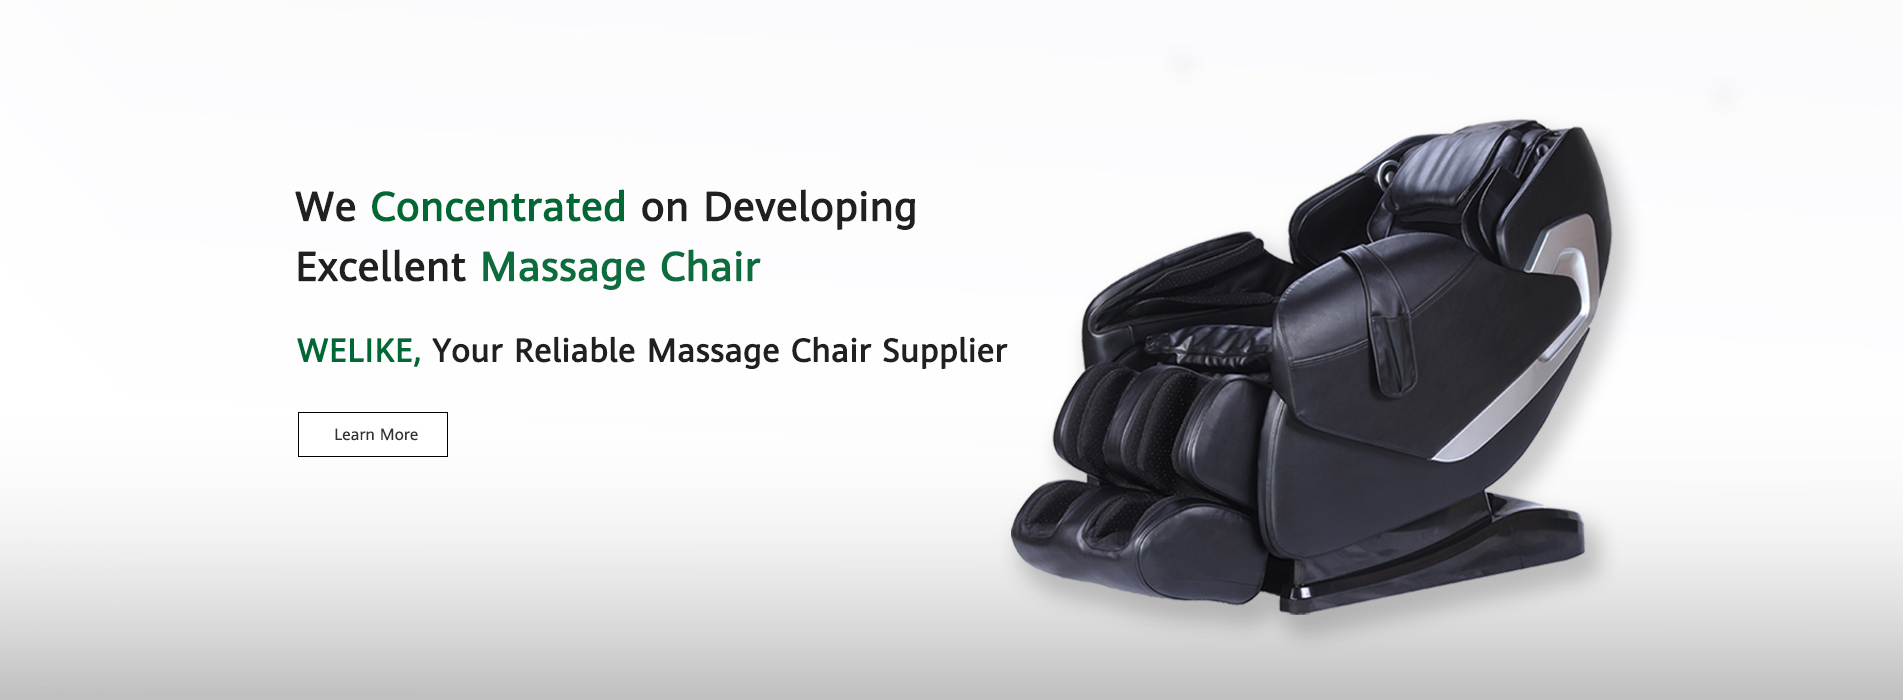 Reliable Делюкс High-tech Massage Chair